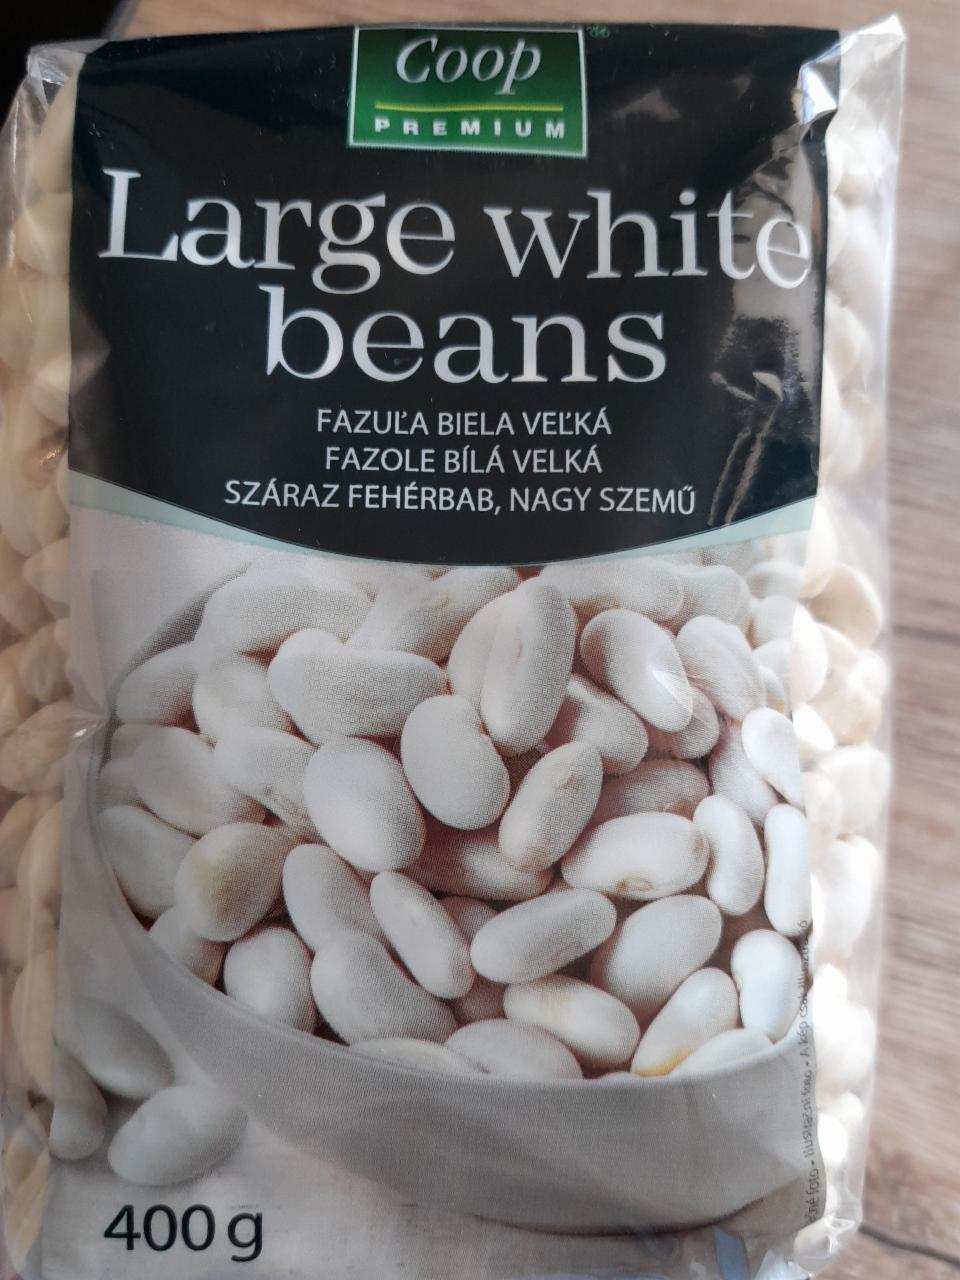 Fotografie - Large white beans Coop premium